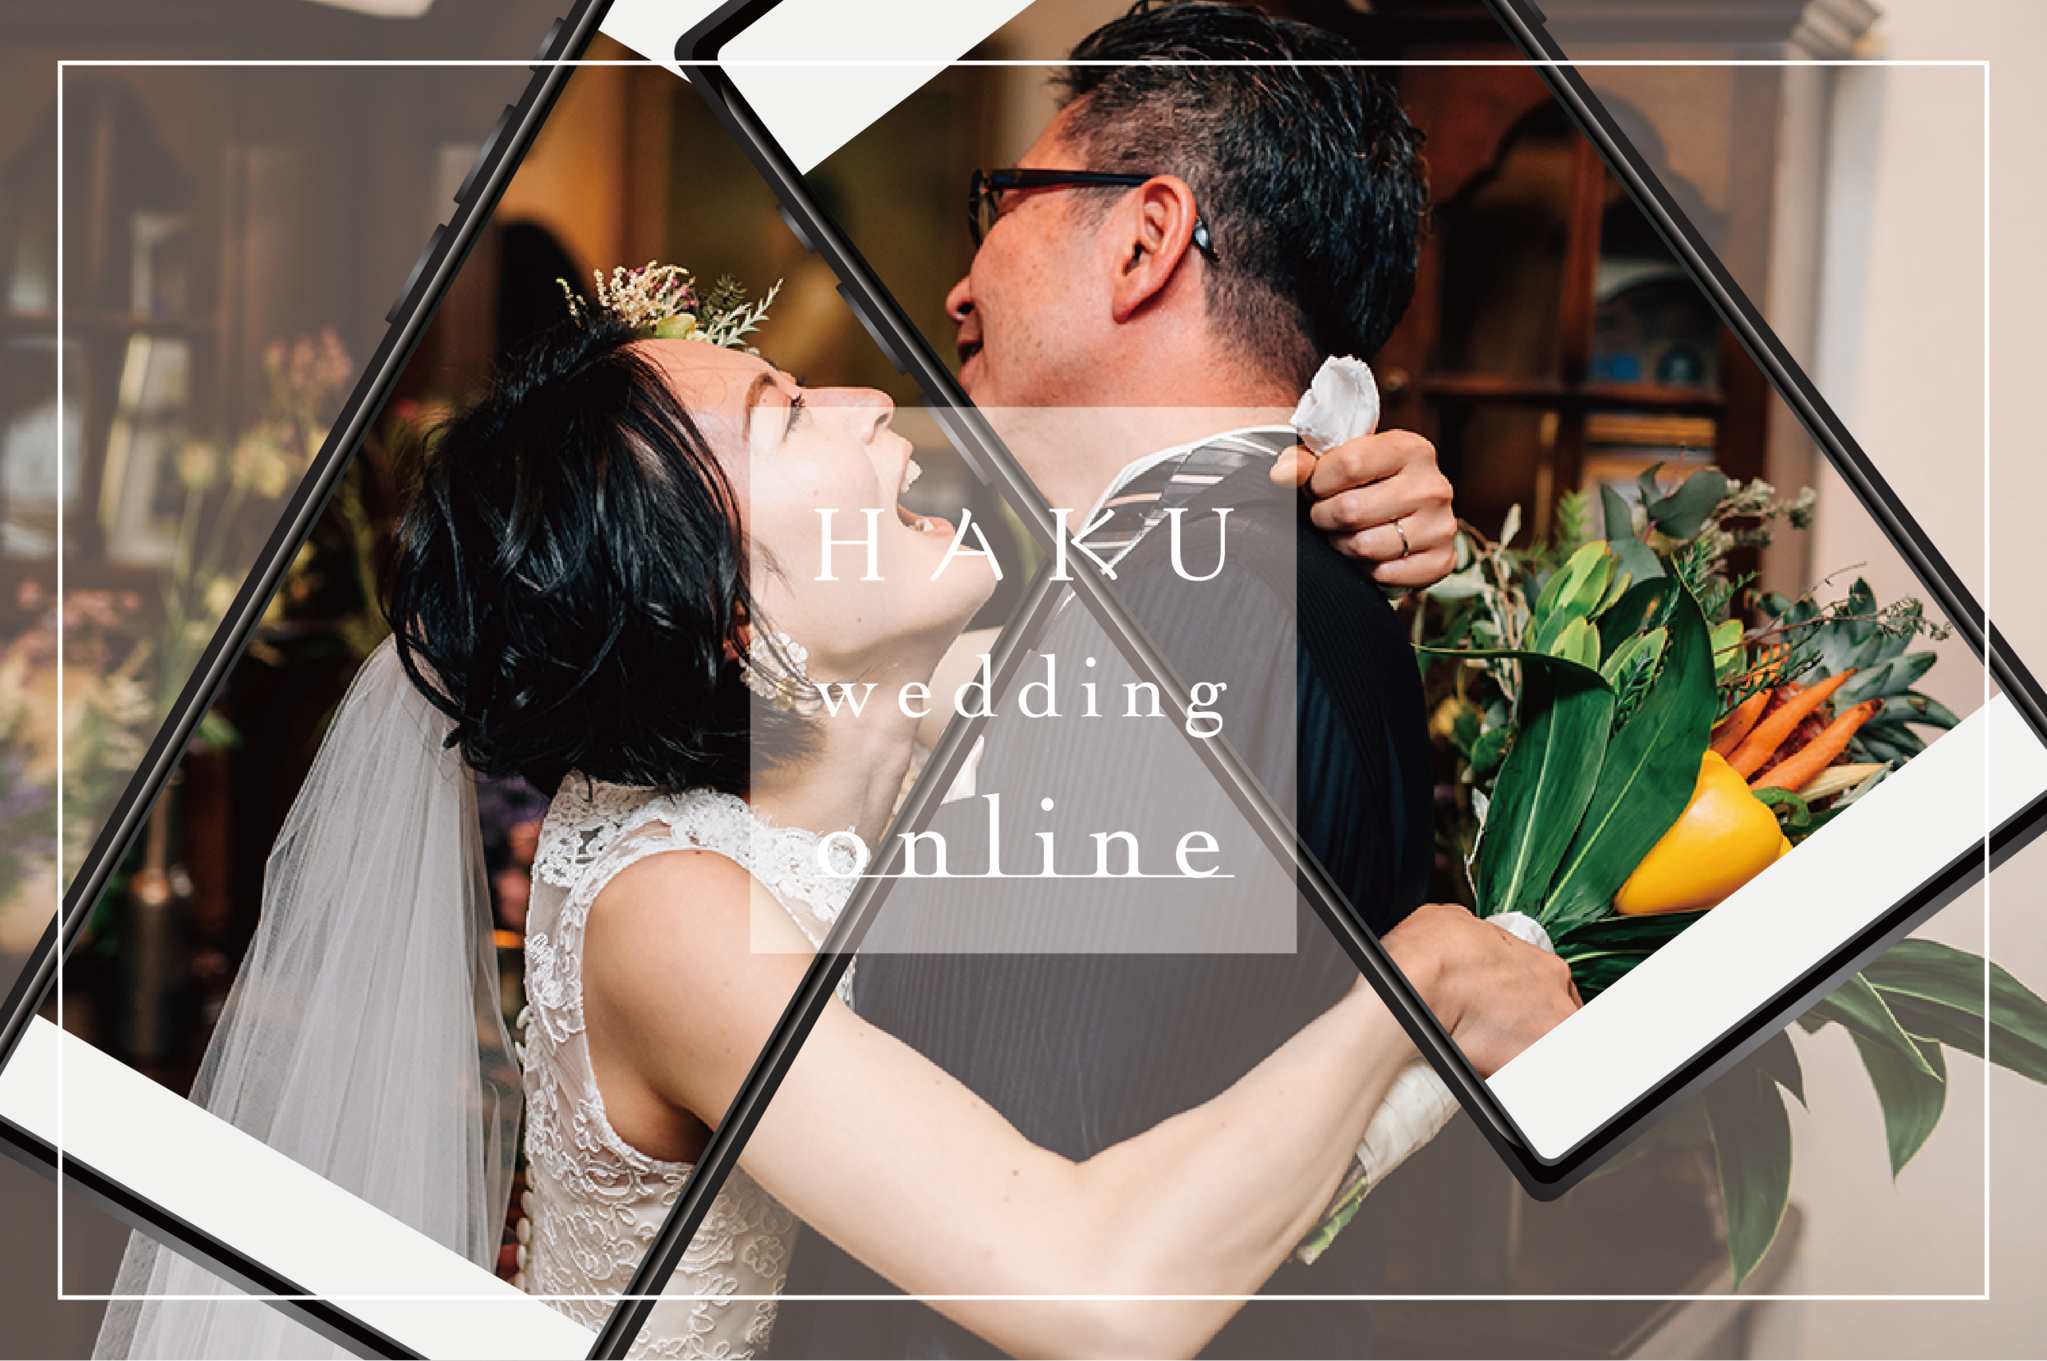 結婚式を諦めない 為のオンラインウェディング Haku Wedding Online をリリース 株式会社スペサンのプレスリリース